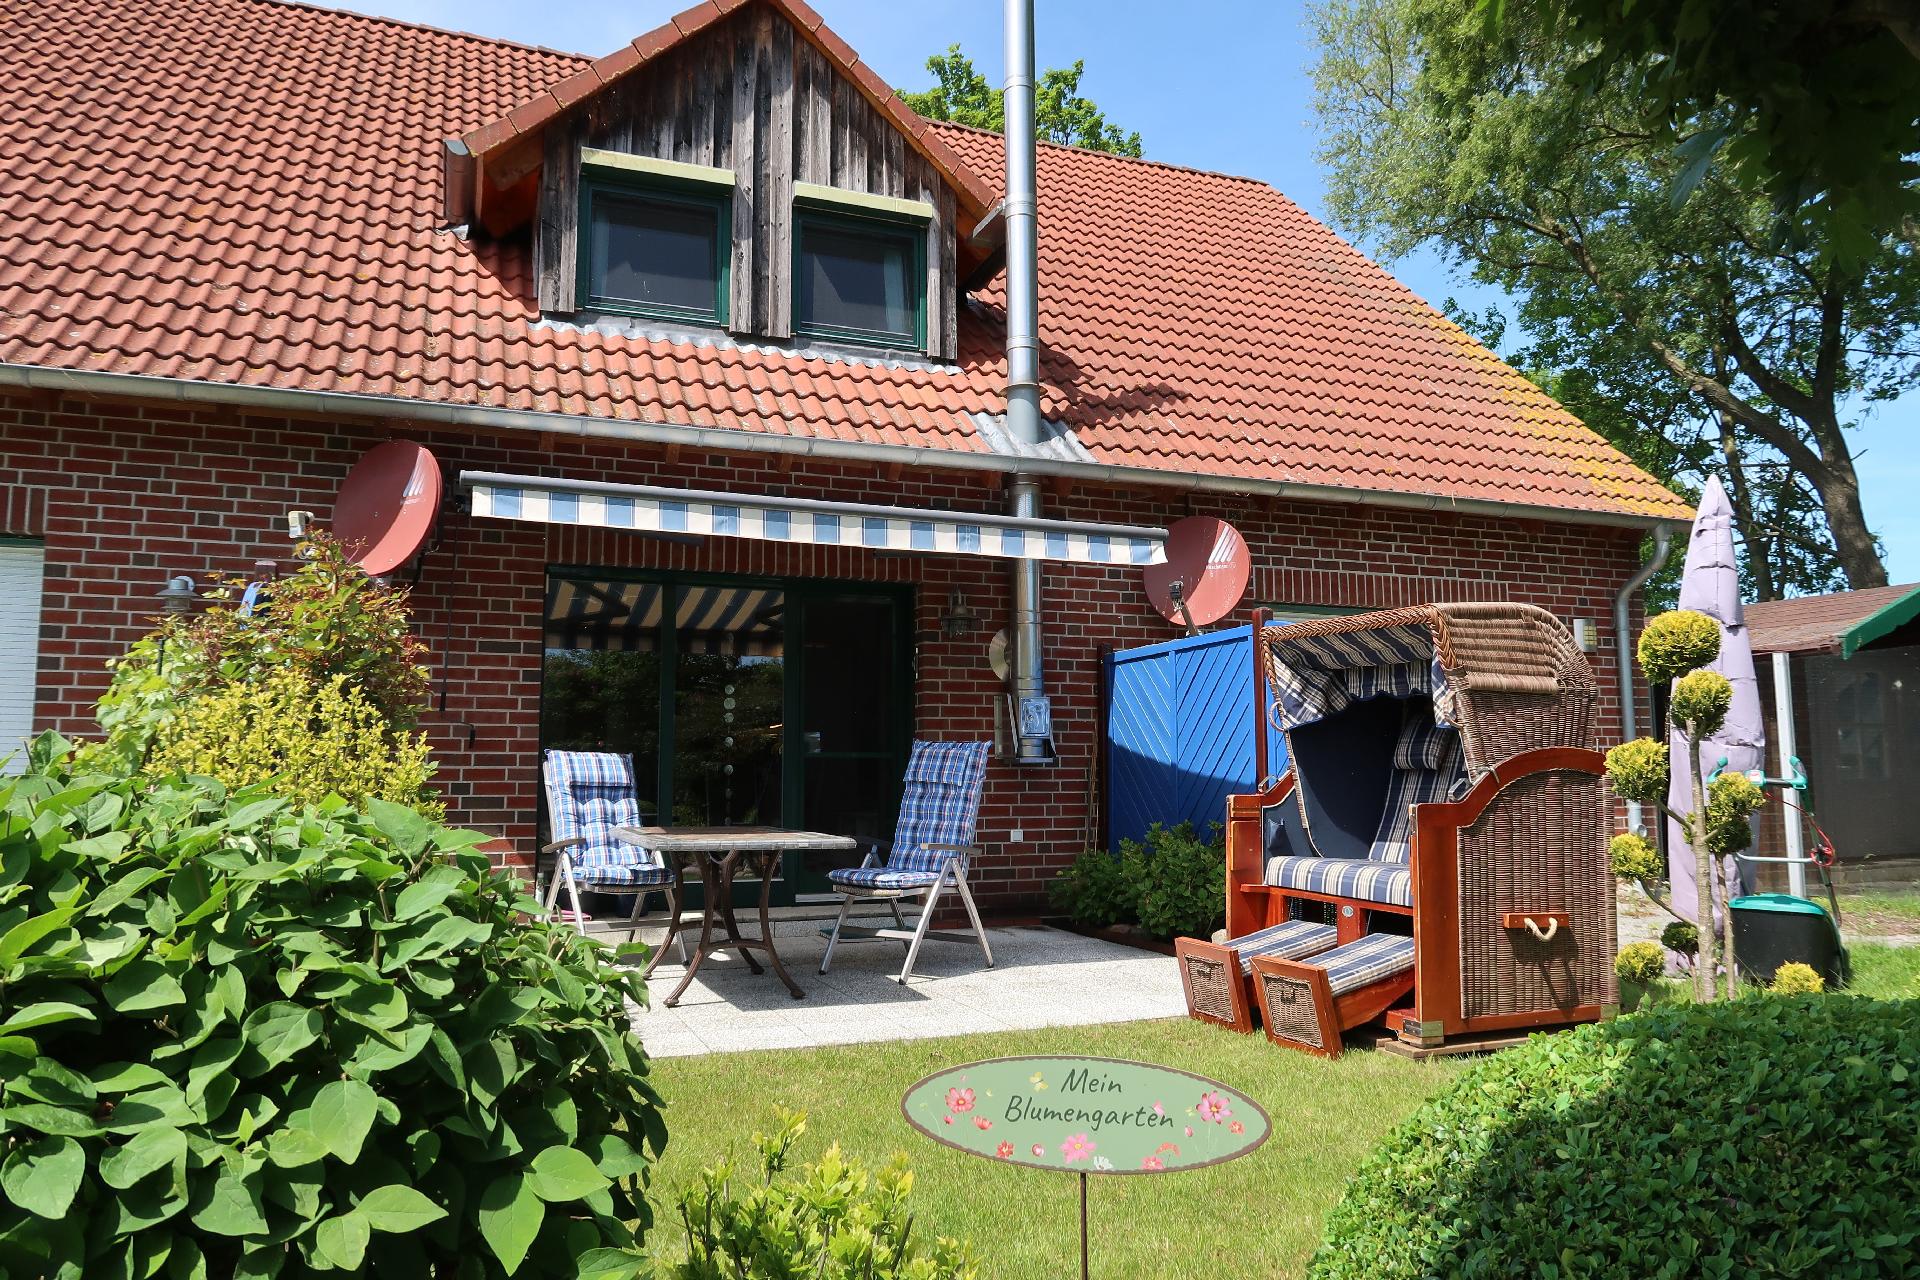 Ferienhaus in Redewisch mit Garten, Grill und Terr Ferienhaus in Mecklenburg Vorpommern